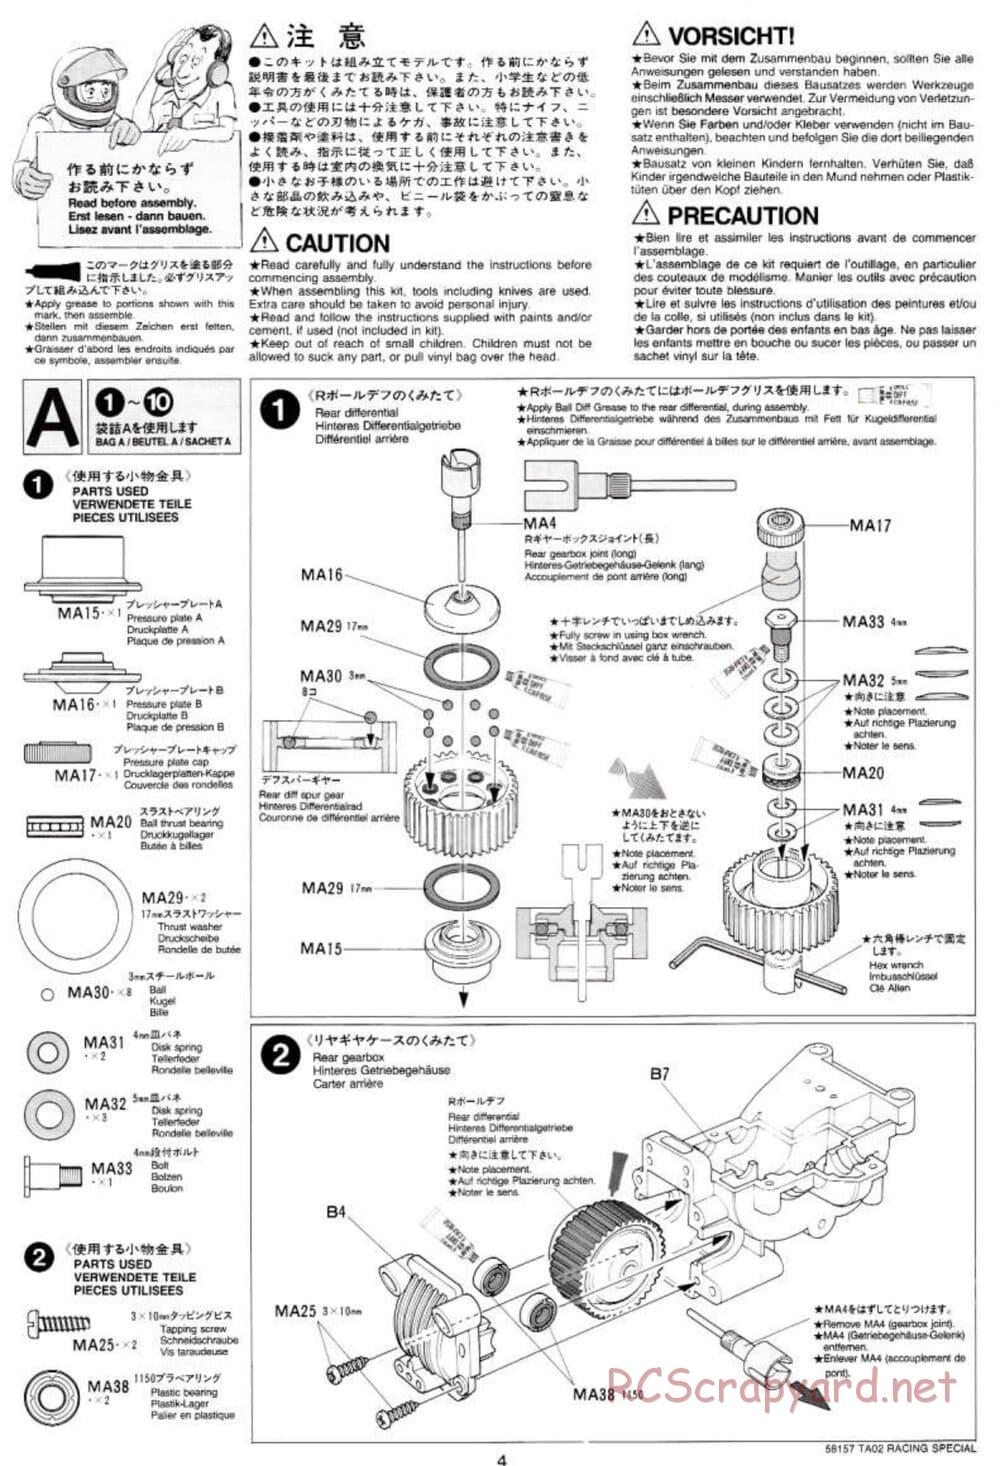 Tamiya - TA-02RS Chassis - Manual - Page 4